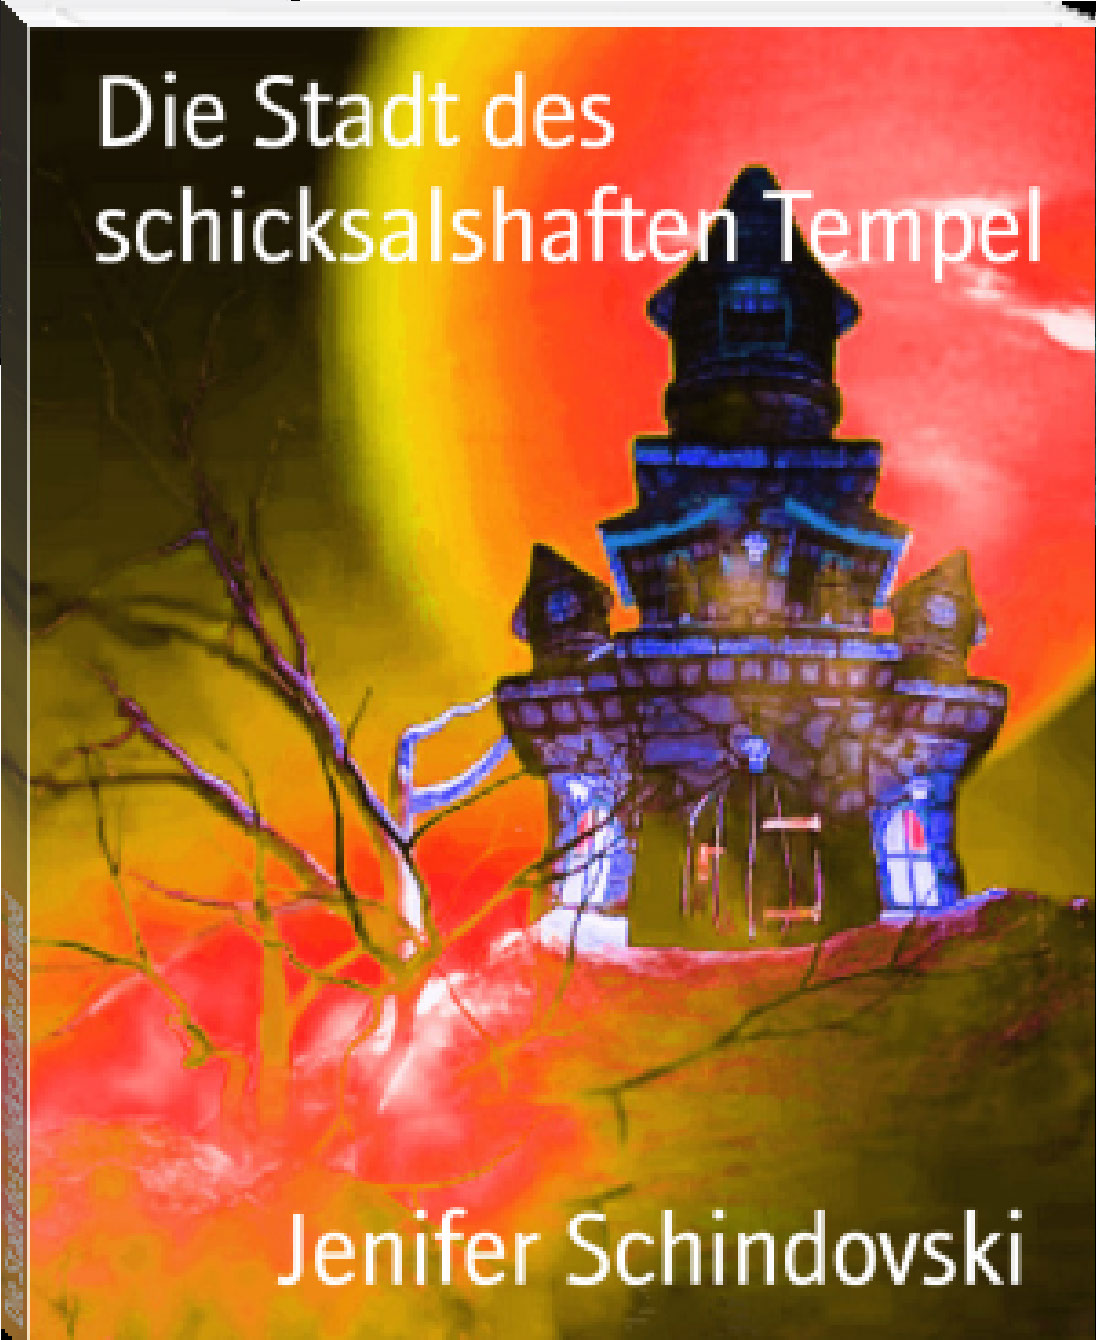 Die Stadt des schicksalshaften Tempel rendition image